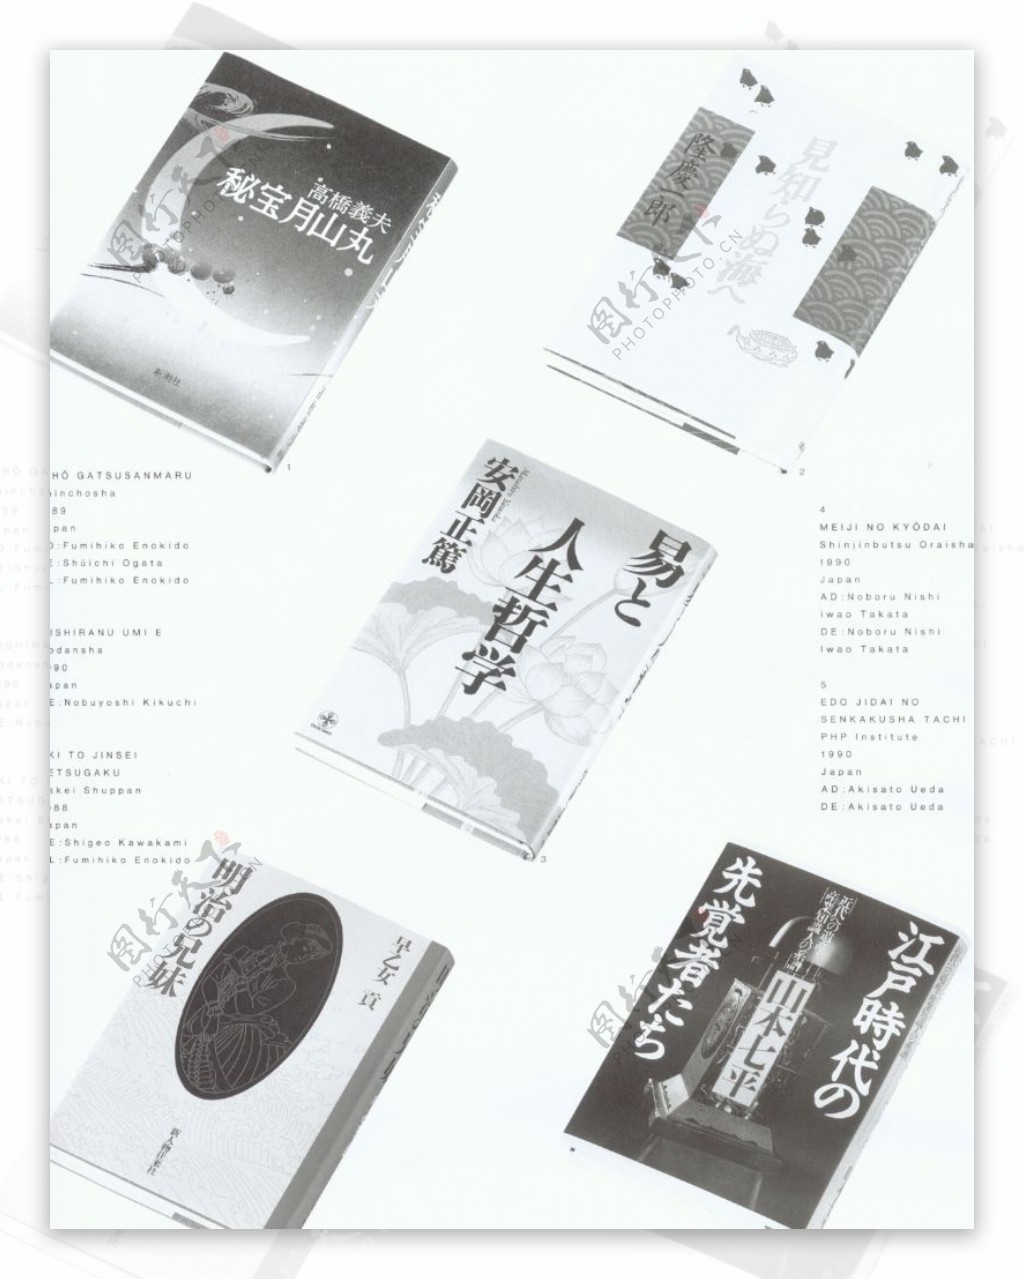 国际书籍装帧设计0072